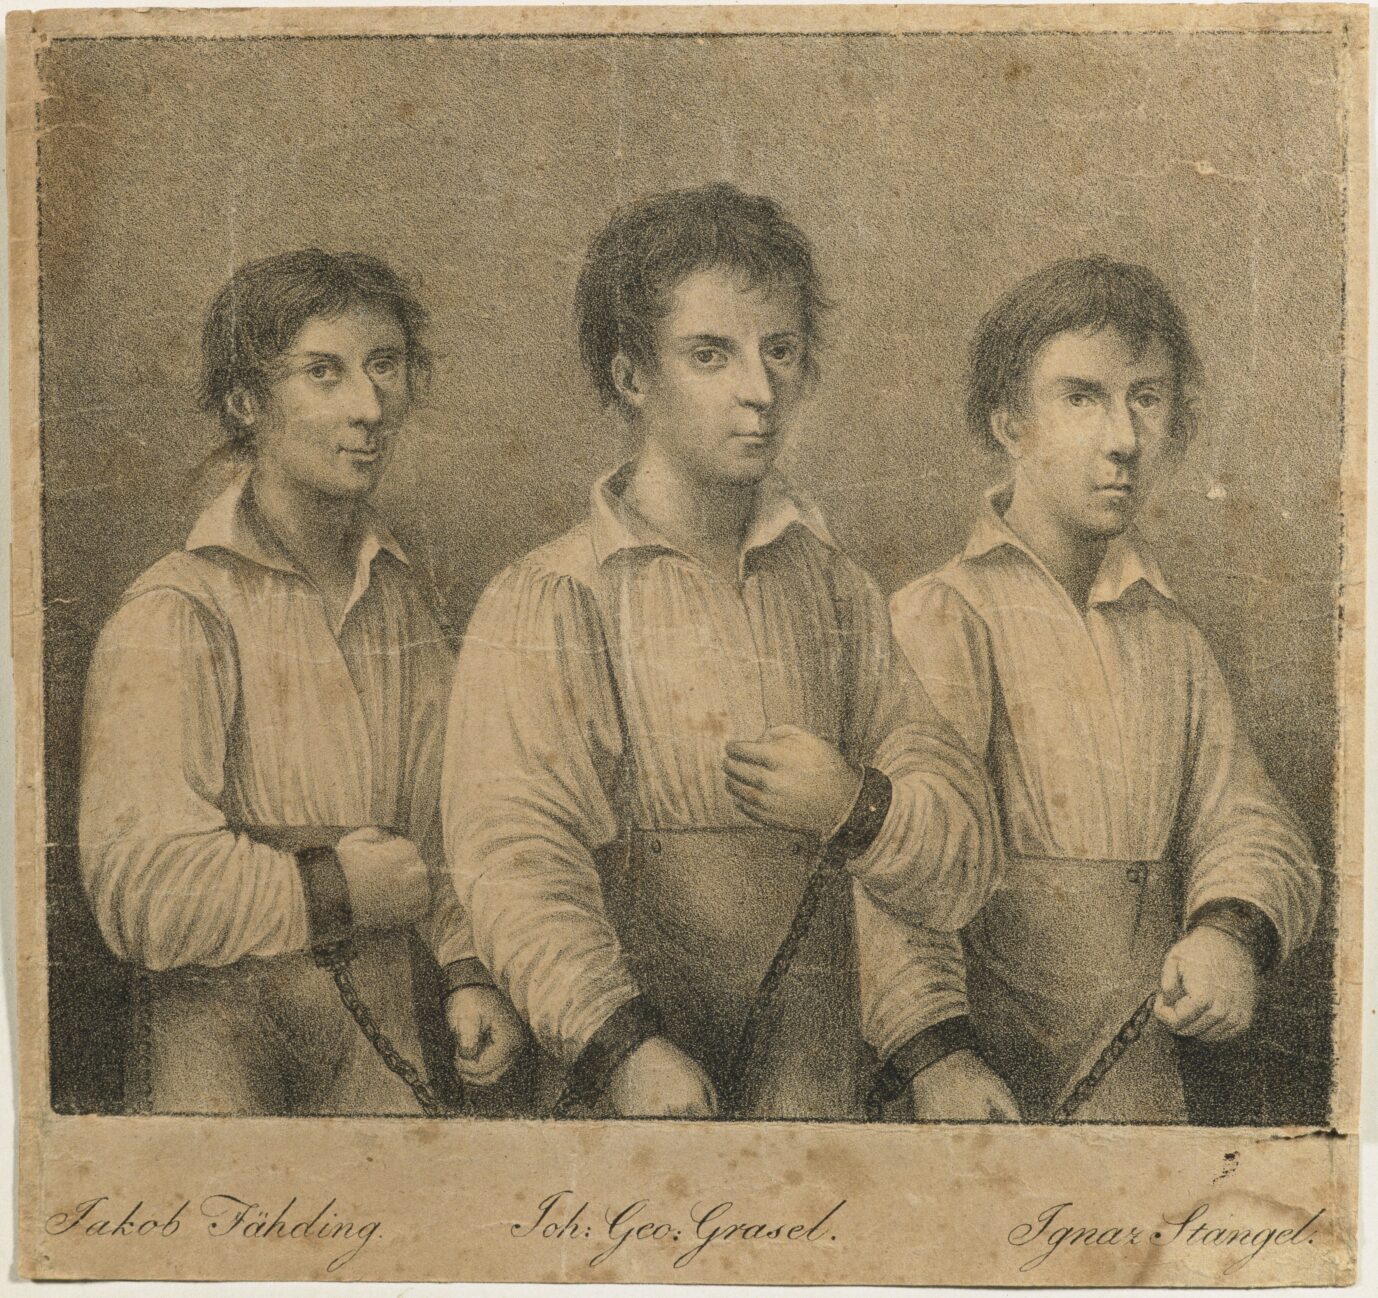 Johann Georg Grasel (1790-1818), "Räuberhauptmann", mit seinen gefangenen Spießgesellen Jakob Fähding und Ignaz Stangel